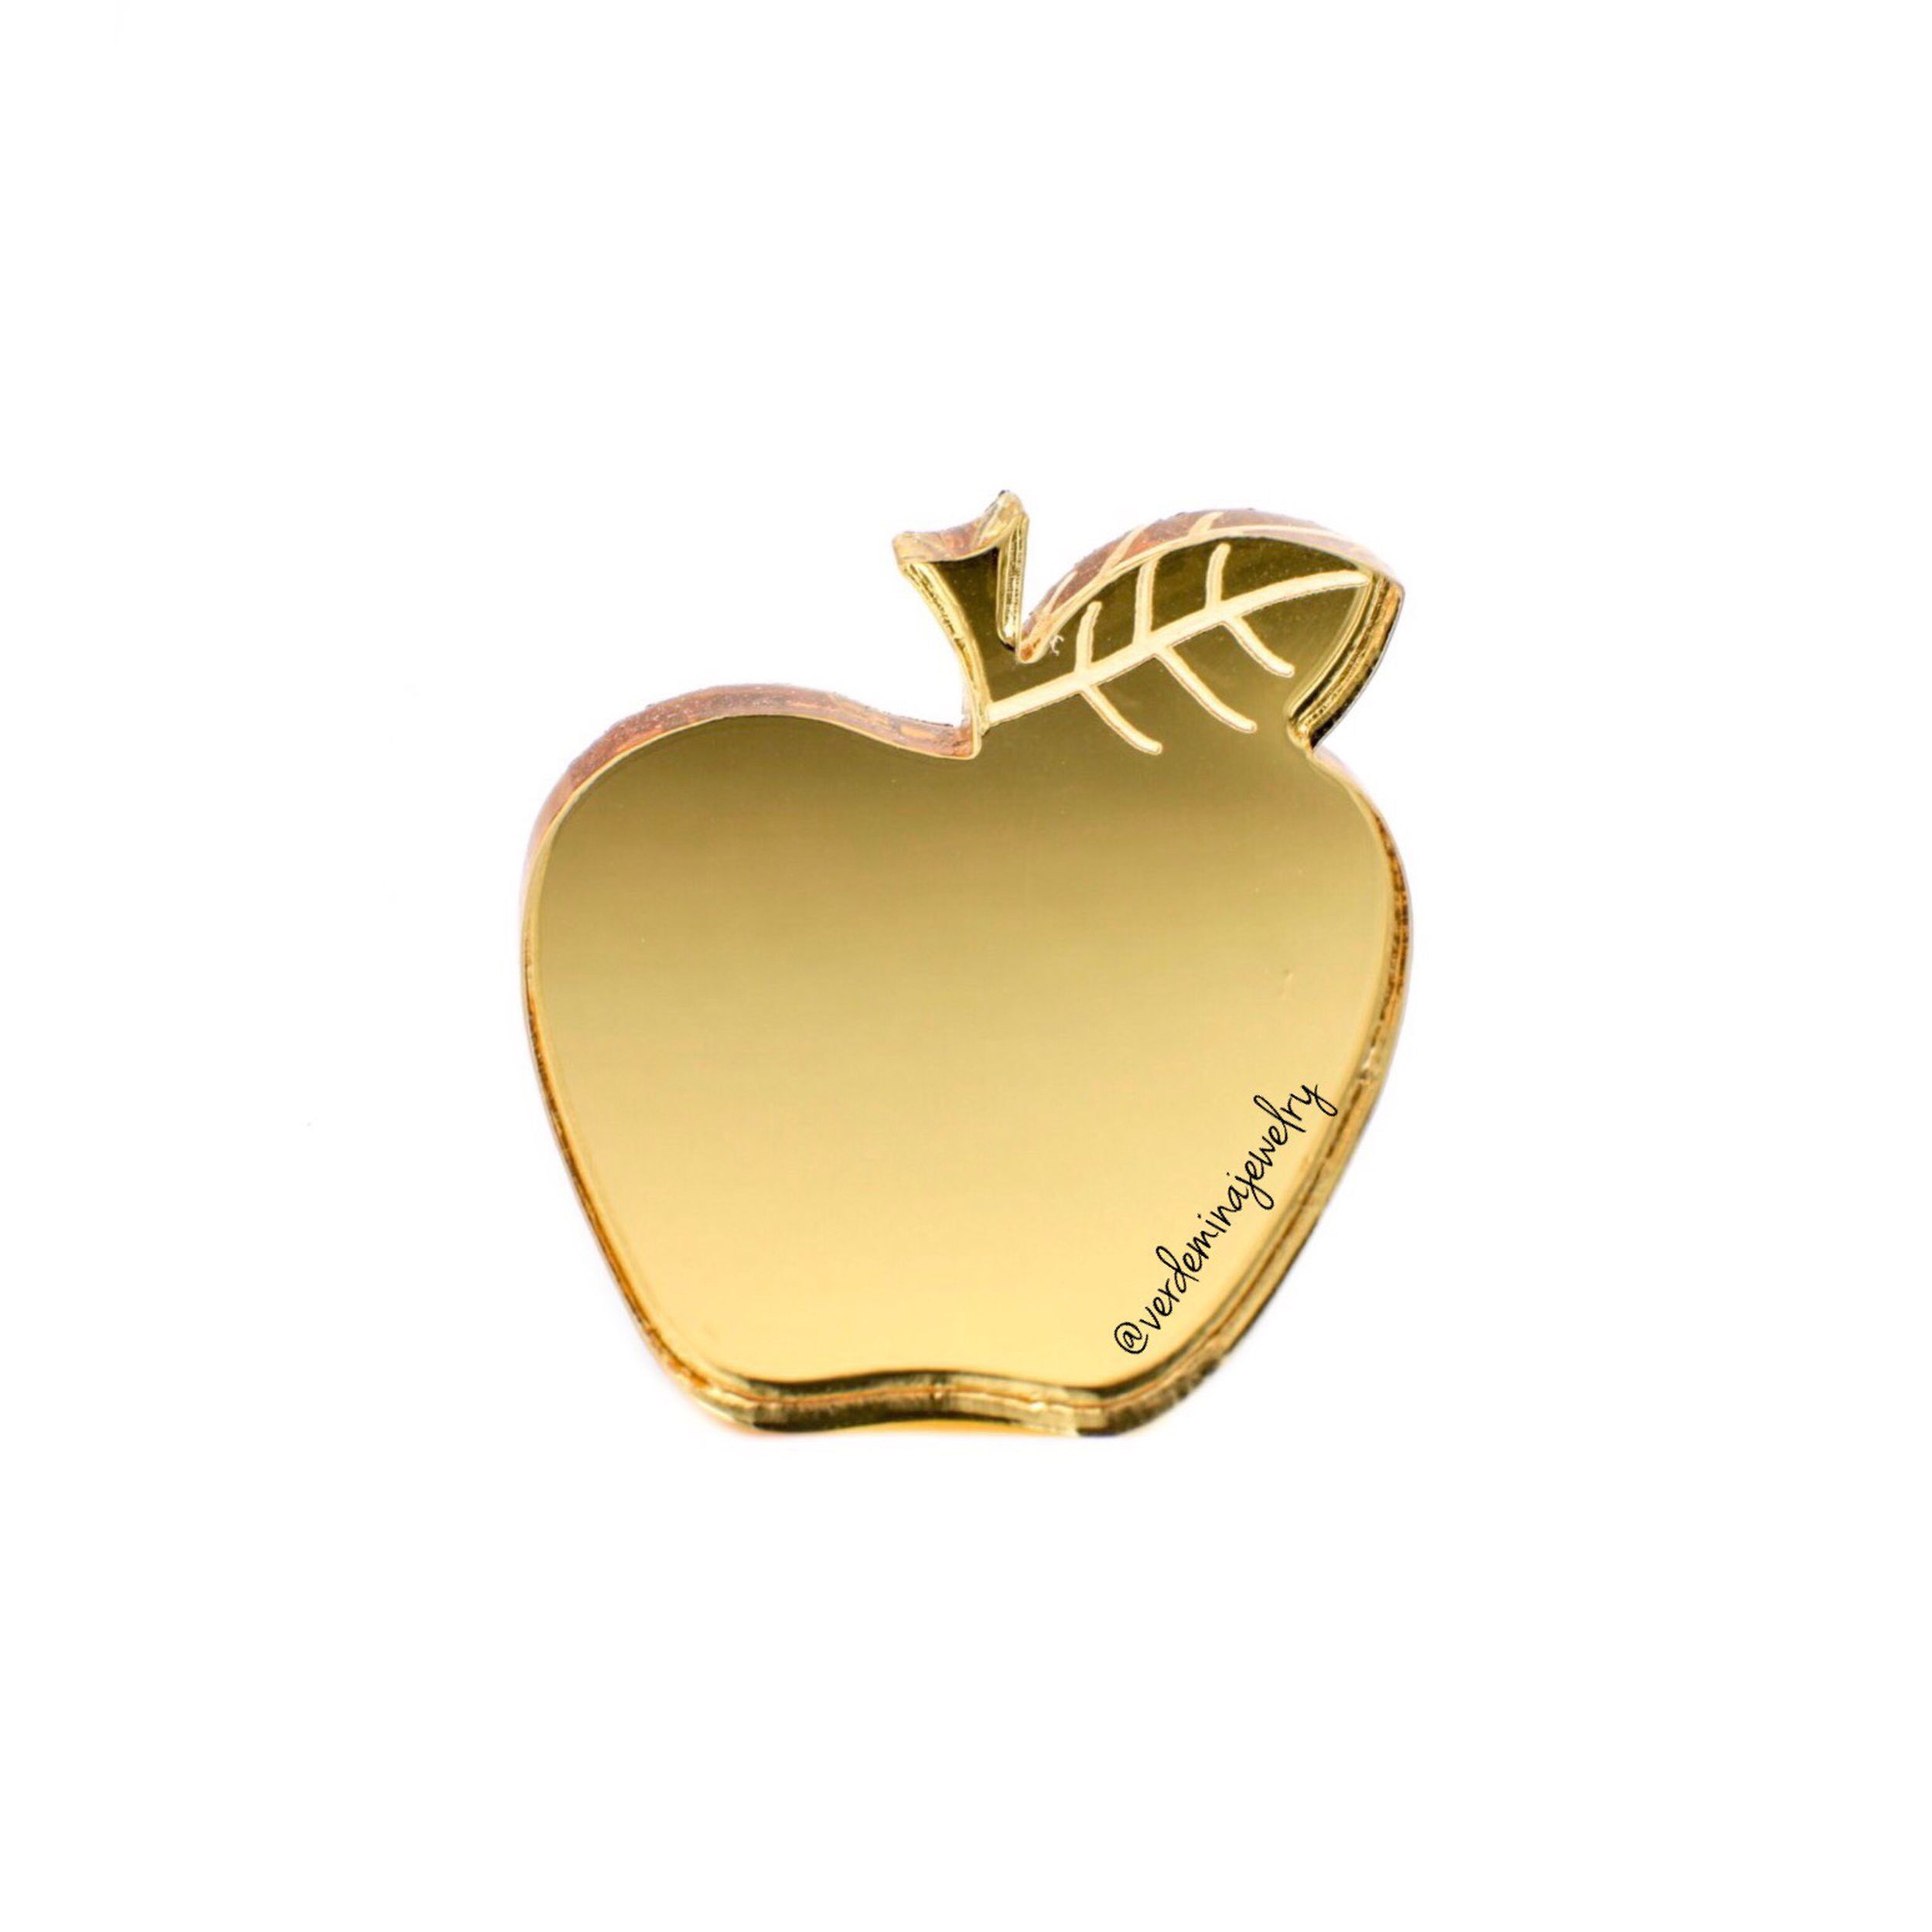 Купить золотое яблоко интернет магазин. Голд Эппл Эппл Голд. Яблоко Ювелирное украшение. Золотой кулон яблоко. Подвеска яблоко золото.